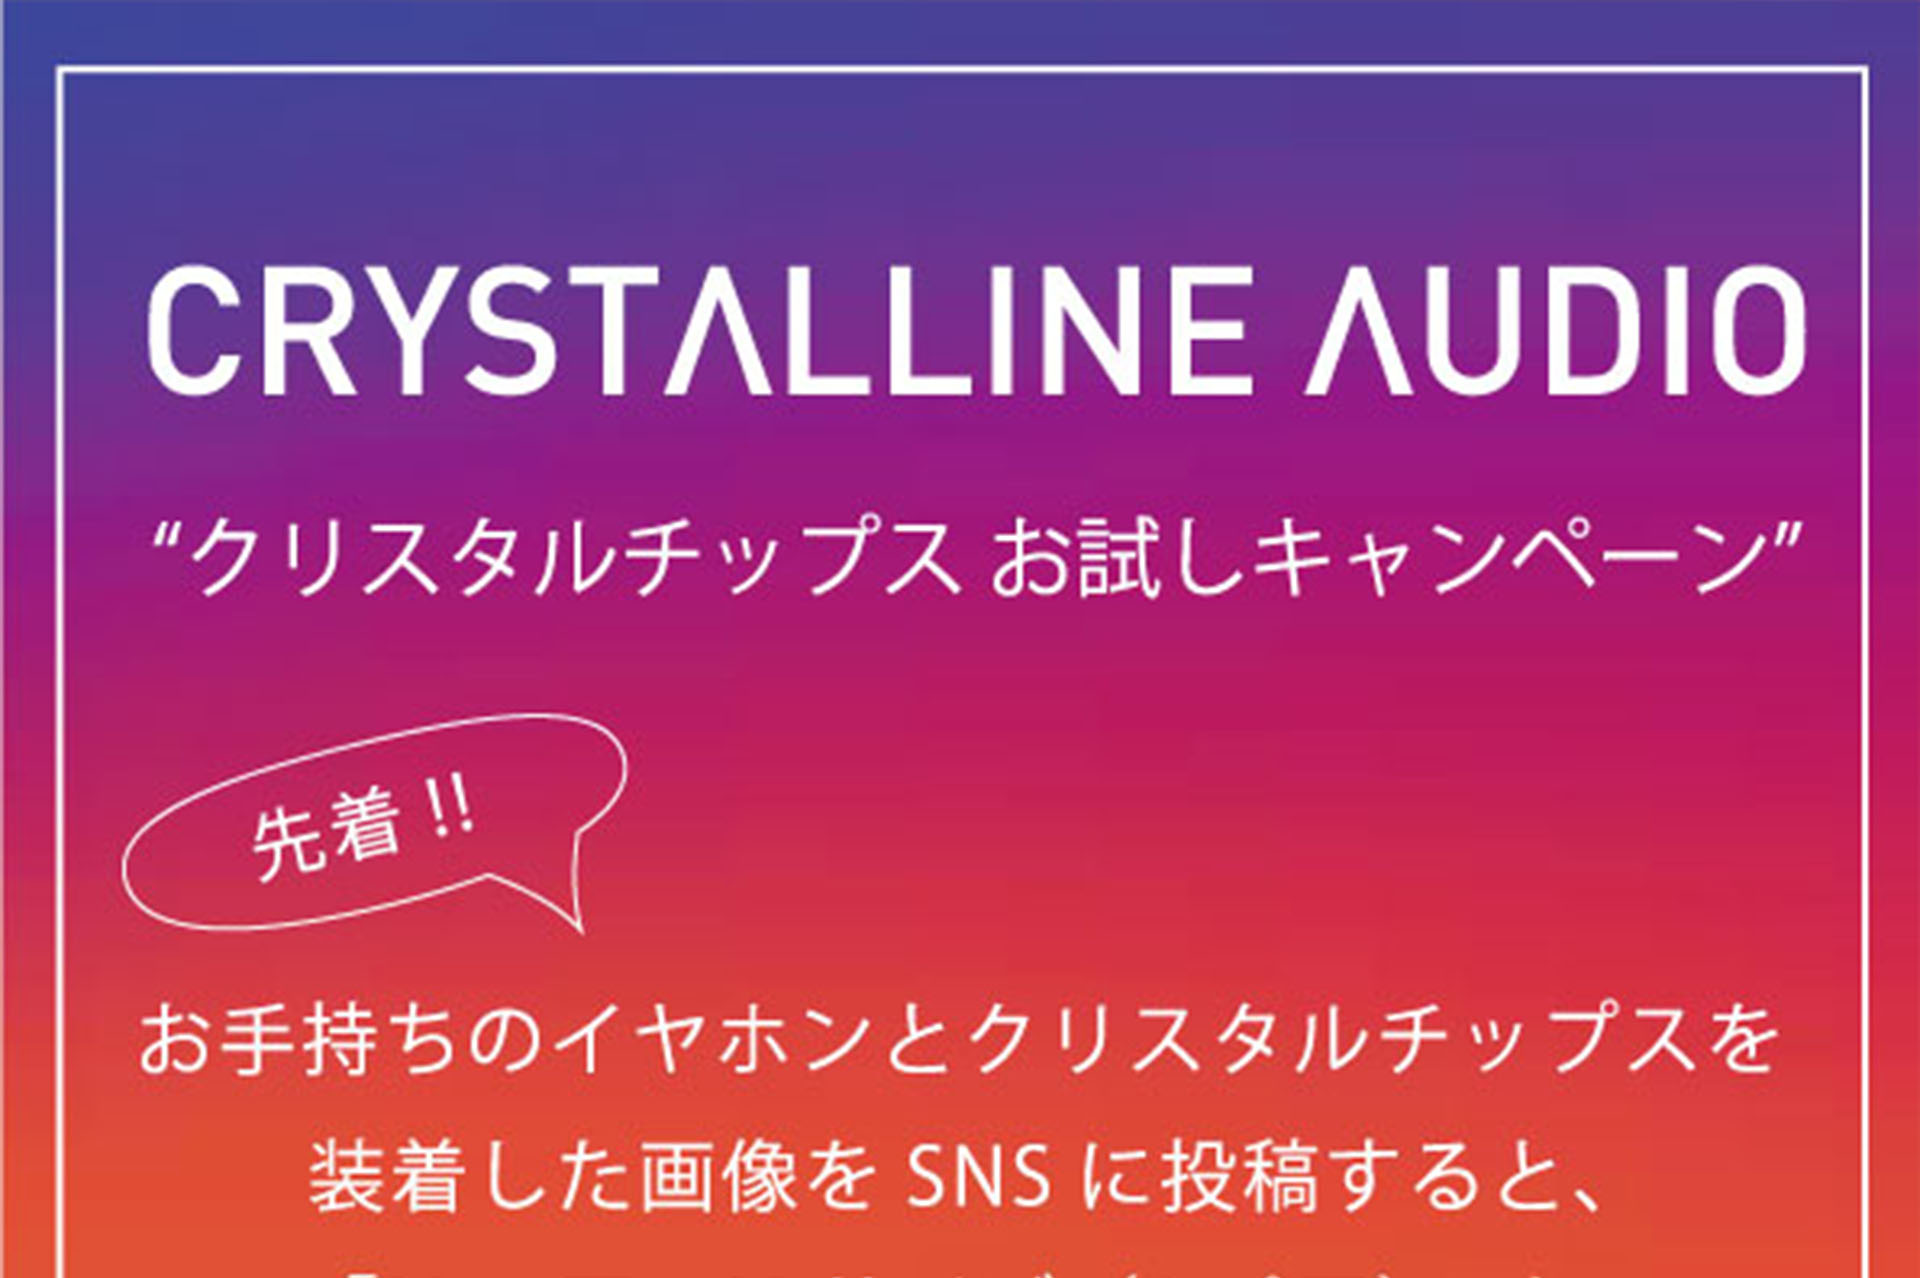 【CRYSTALLINE AUDIO】クリスタルチップスお試しキャンペーン